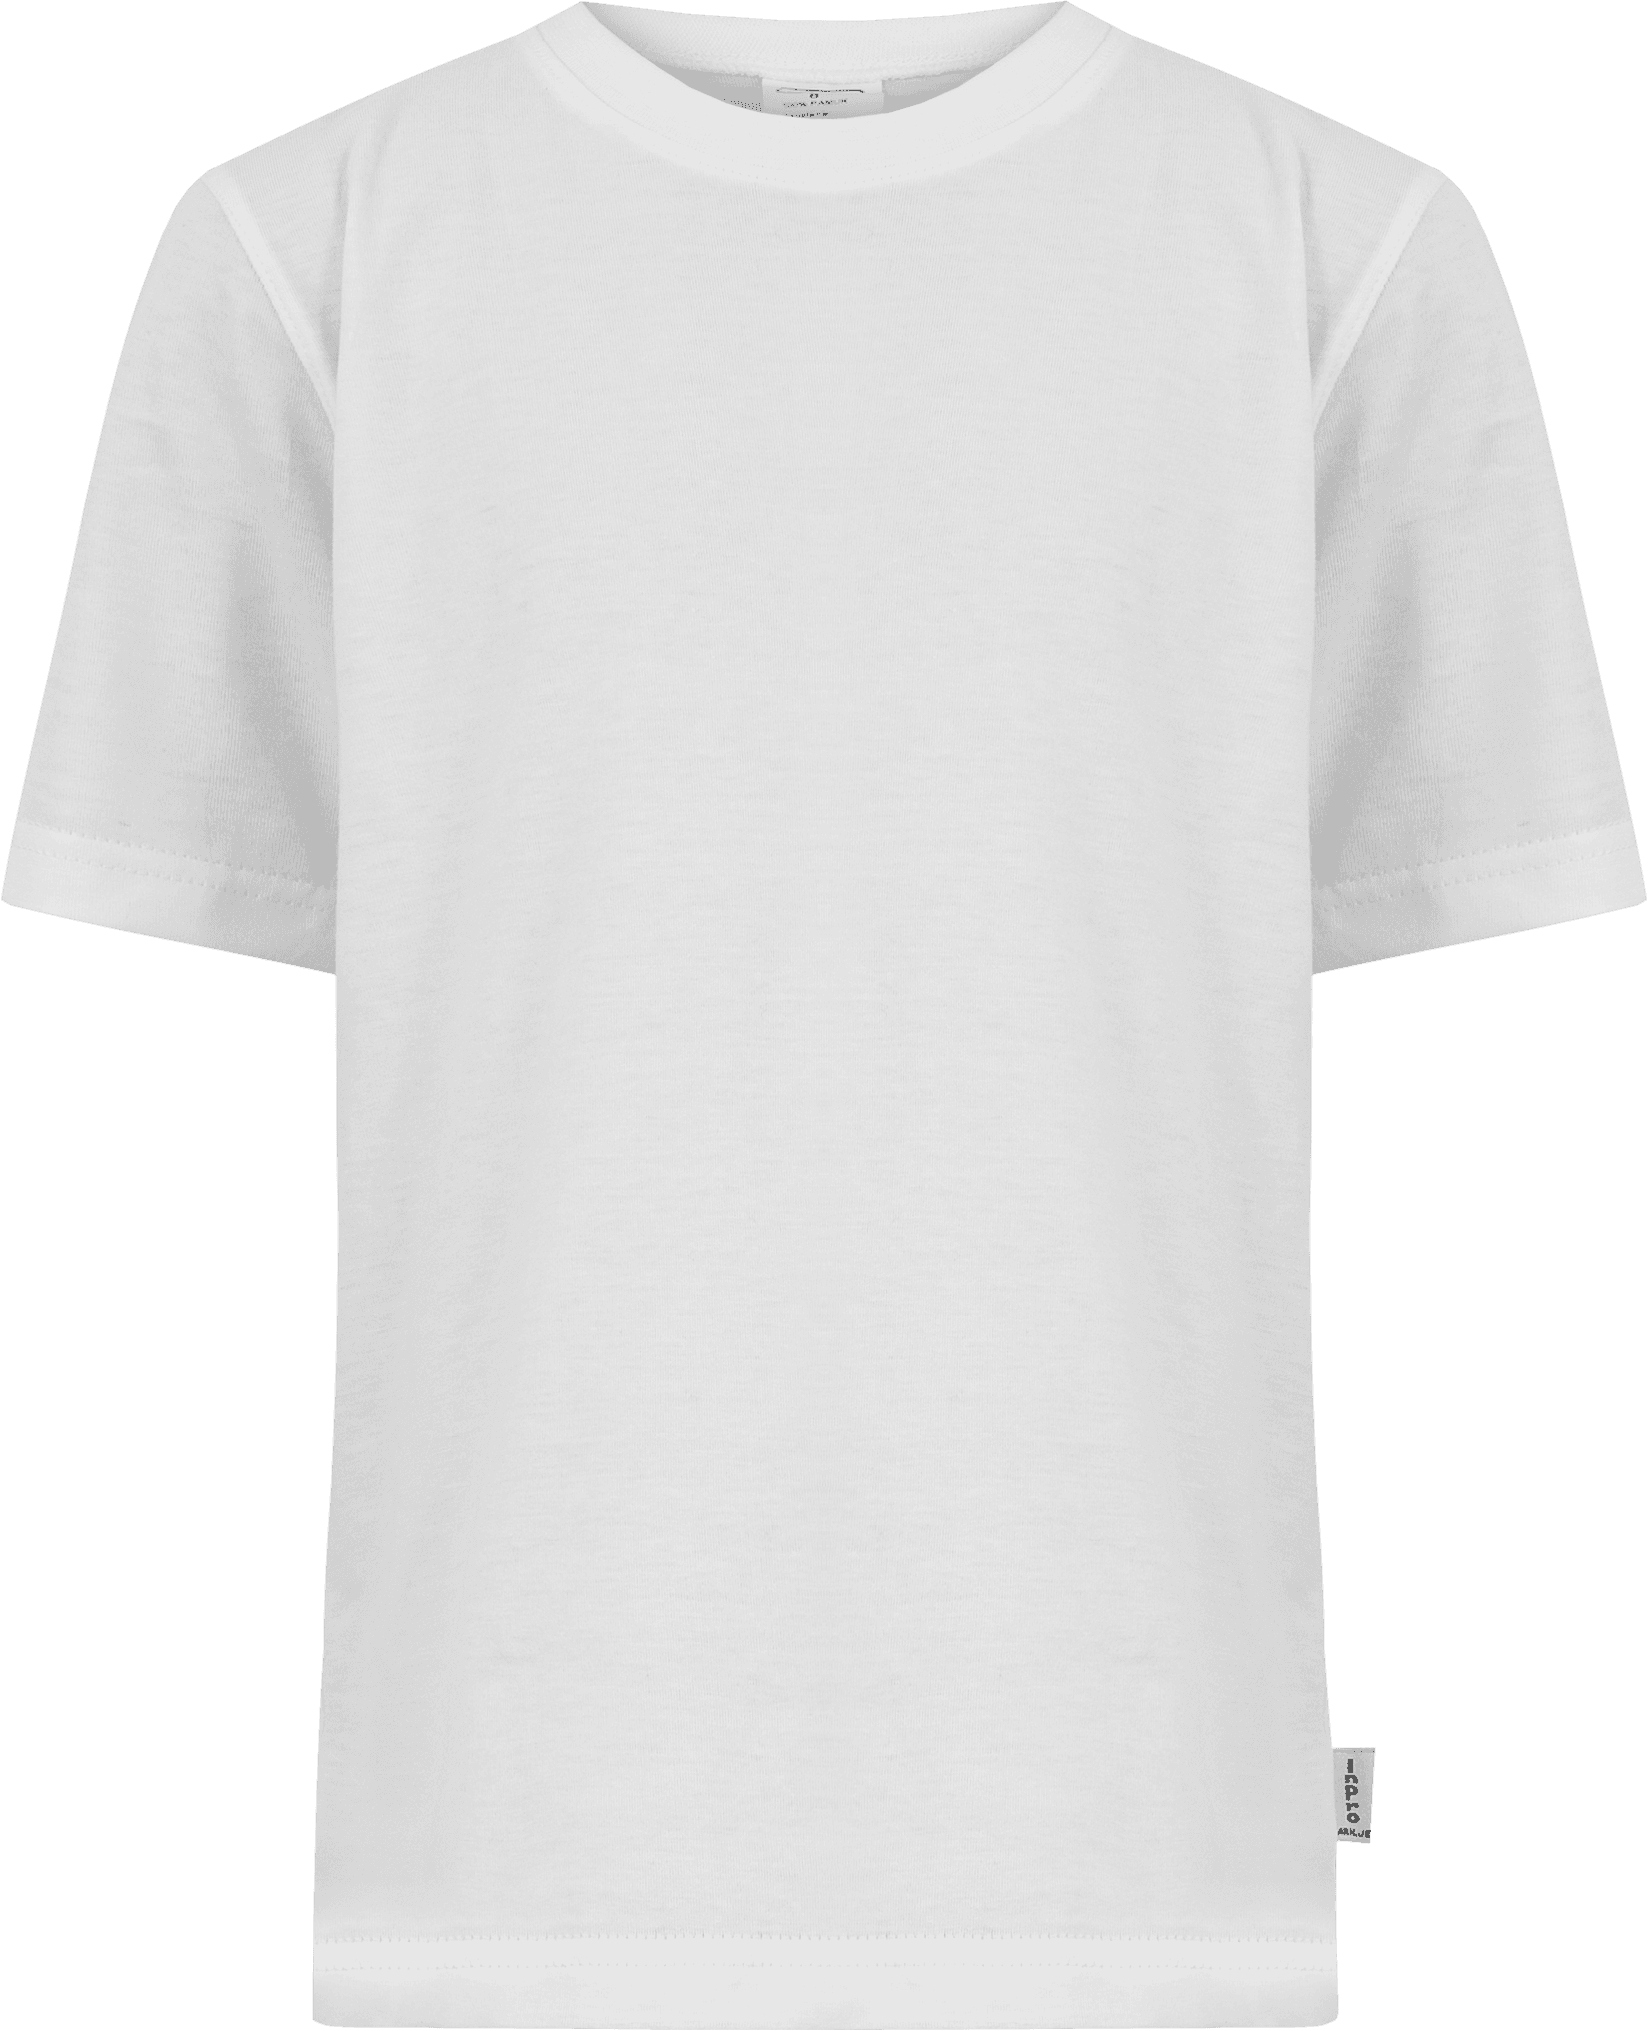 Selected image for INPRO Dečija pamučna majica kratkih rukava manjih veličina bela